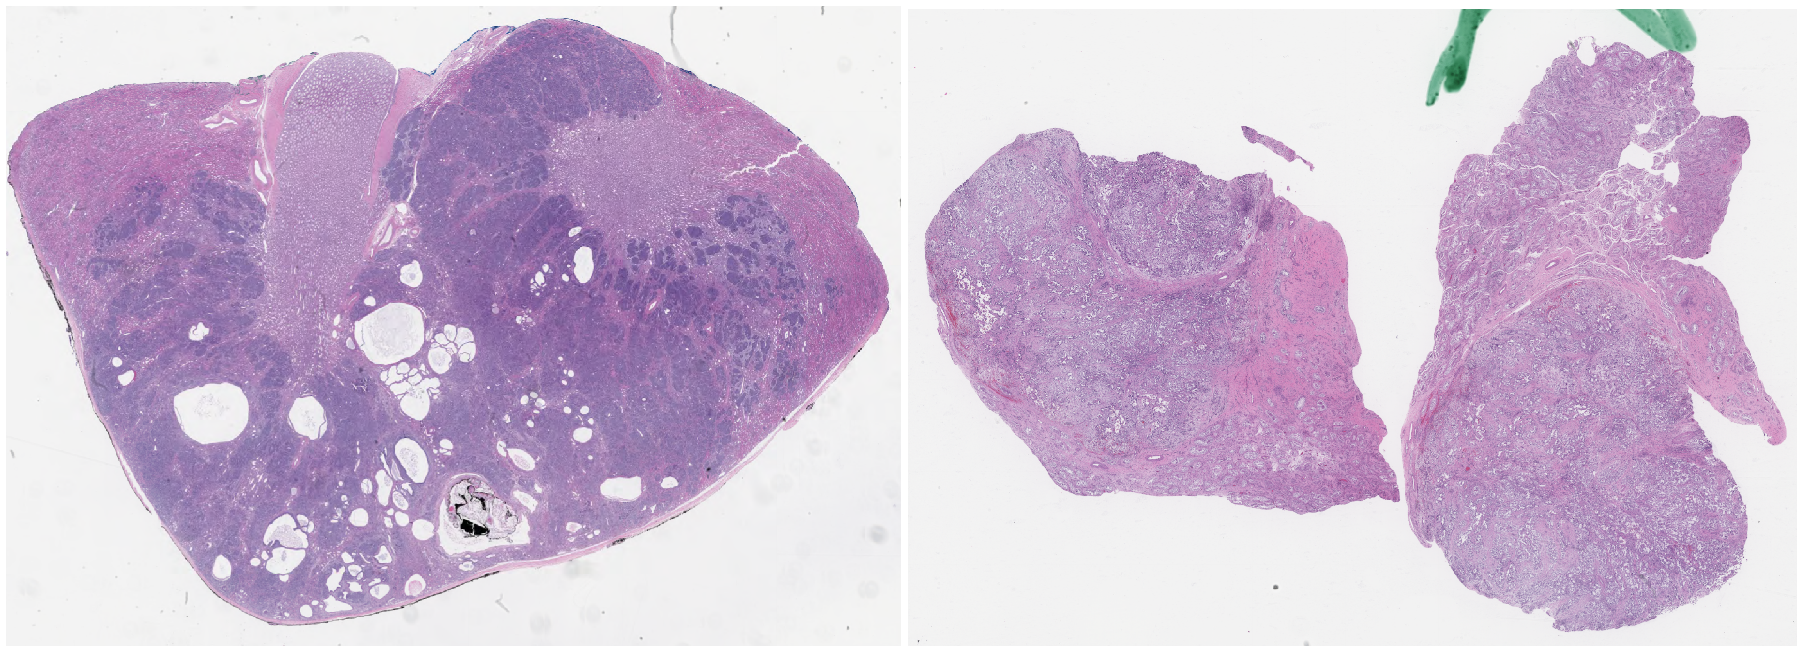 Two example digital pathology tissue slides